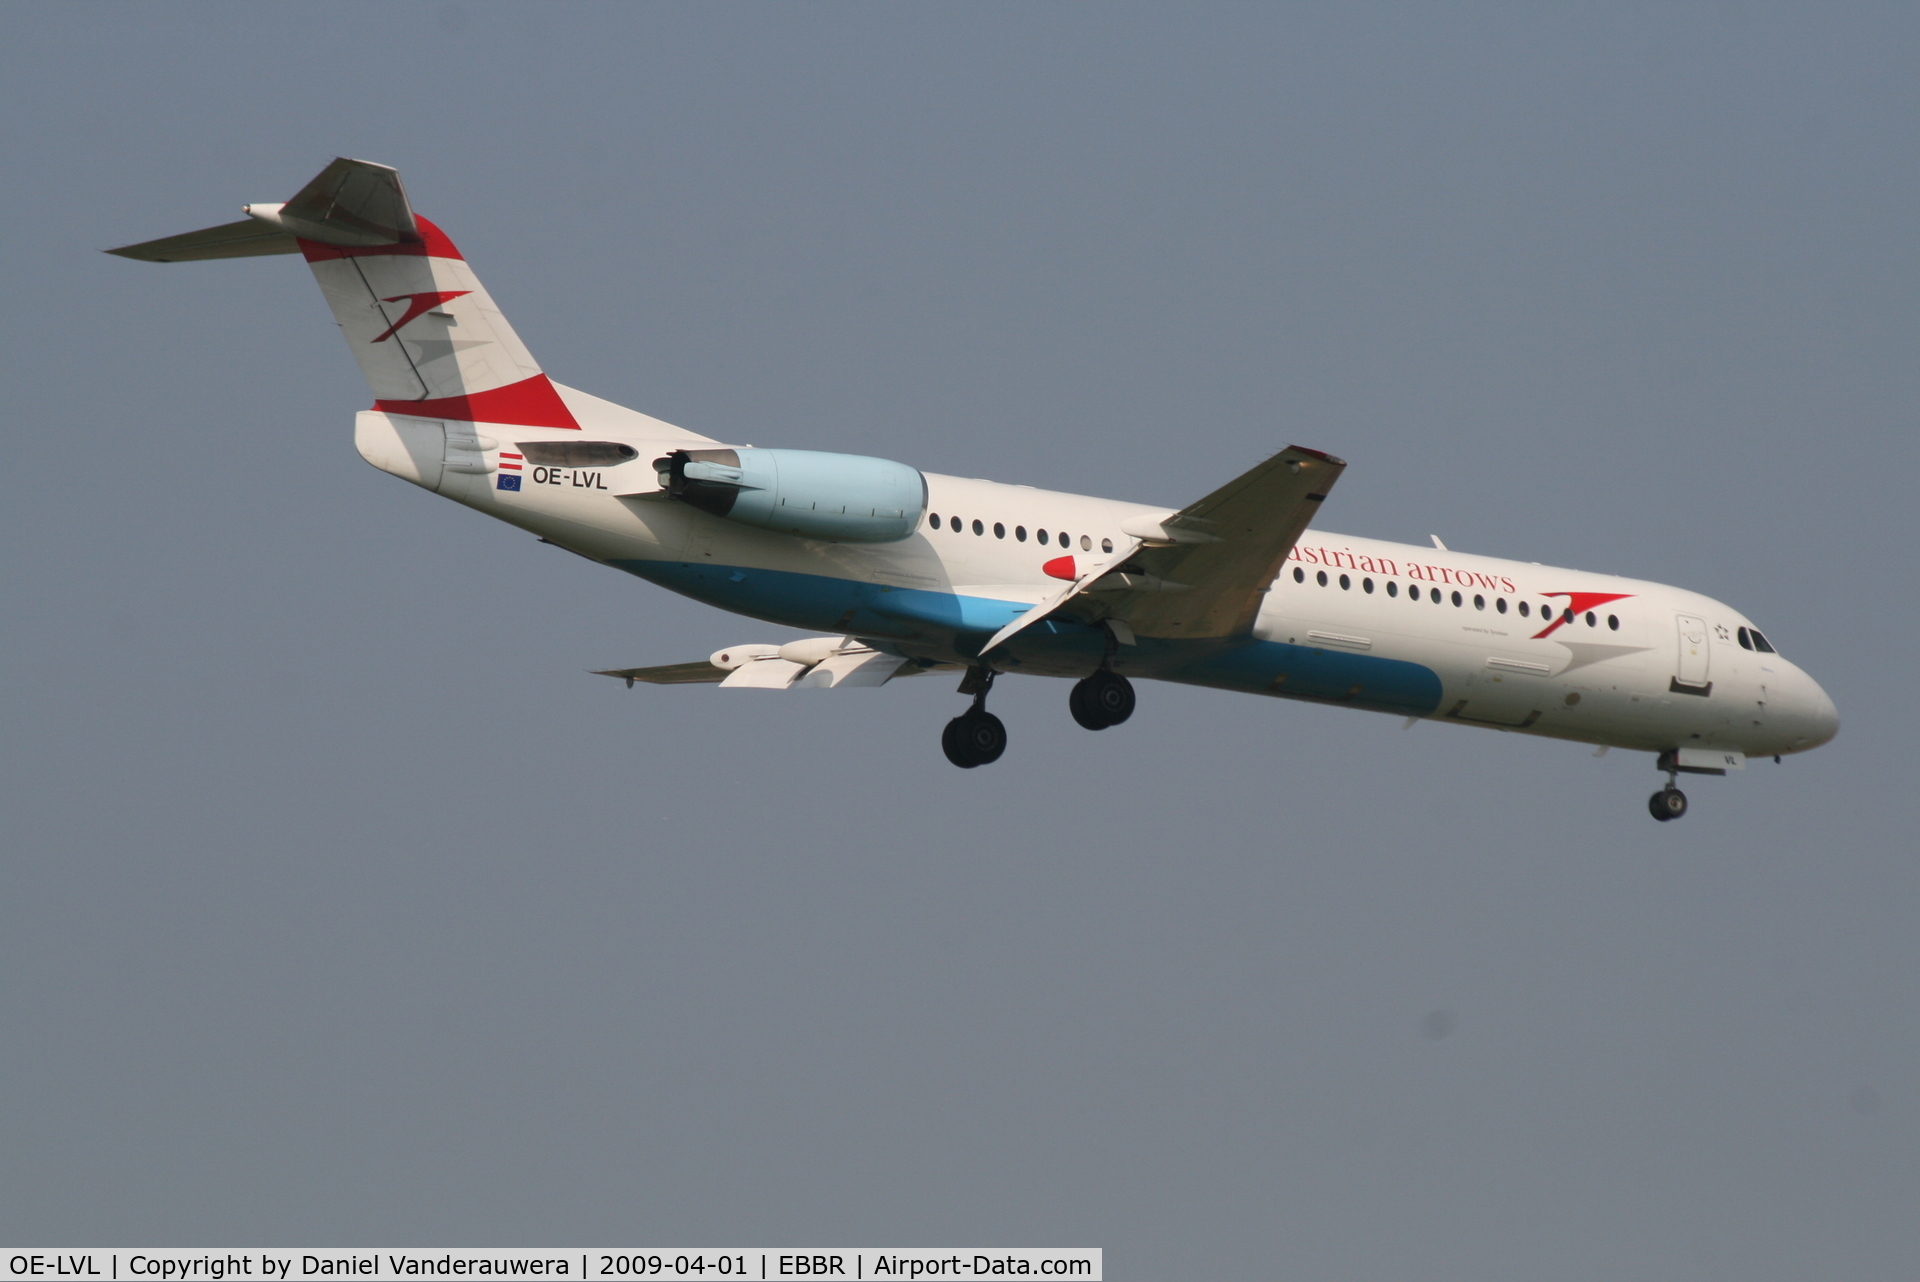 OE-LVL, 1992 Fokker 100 (F-28-0100) C/N 11404, Flight OS367 is descending to RWY 02